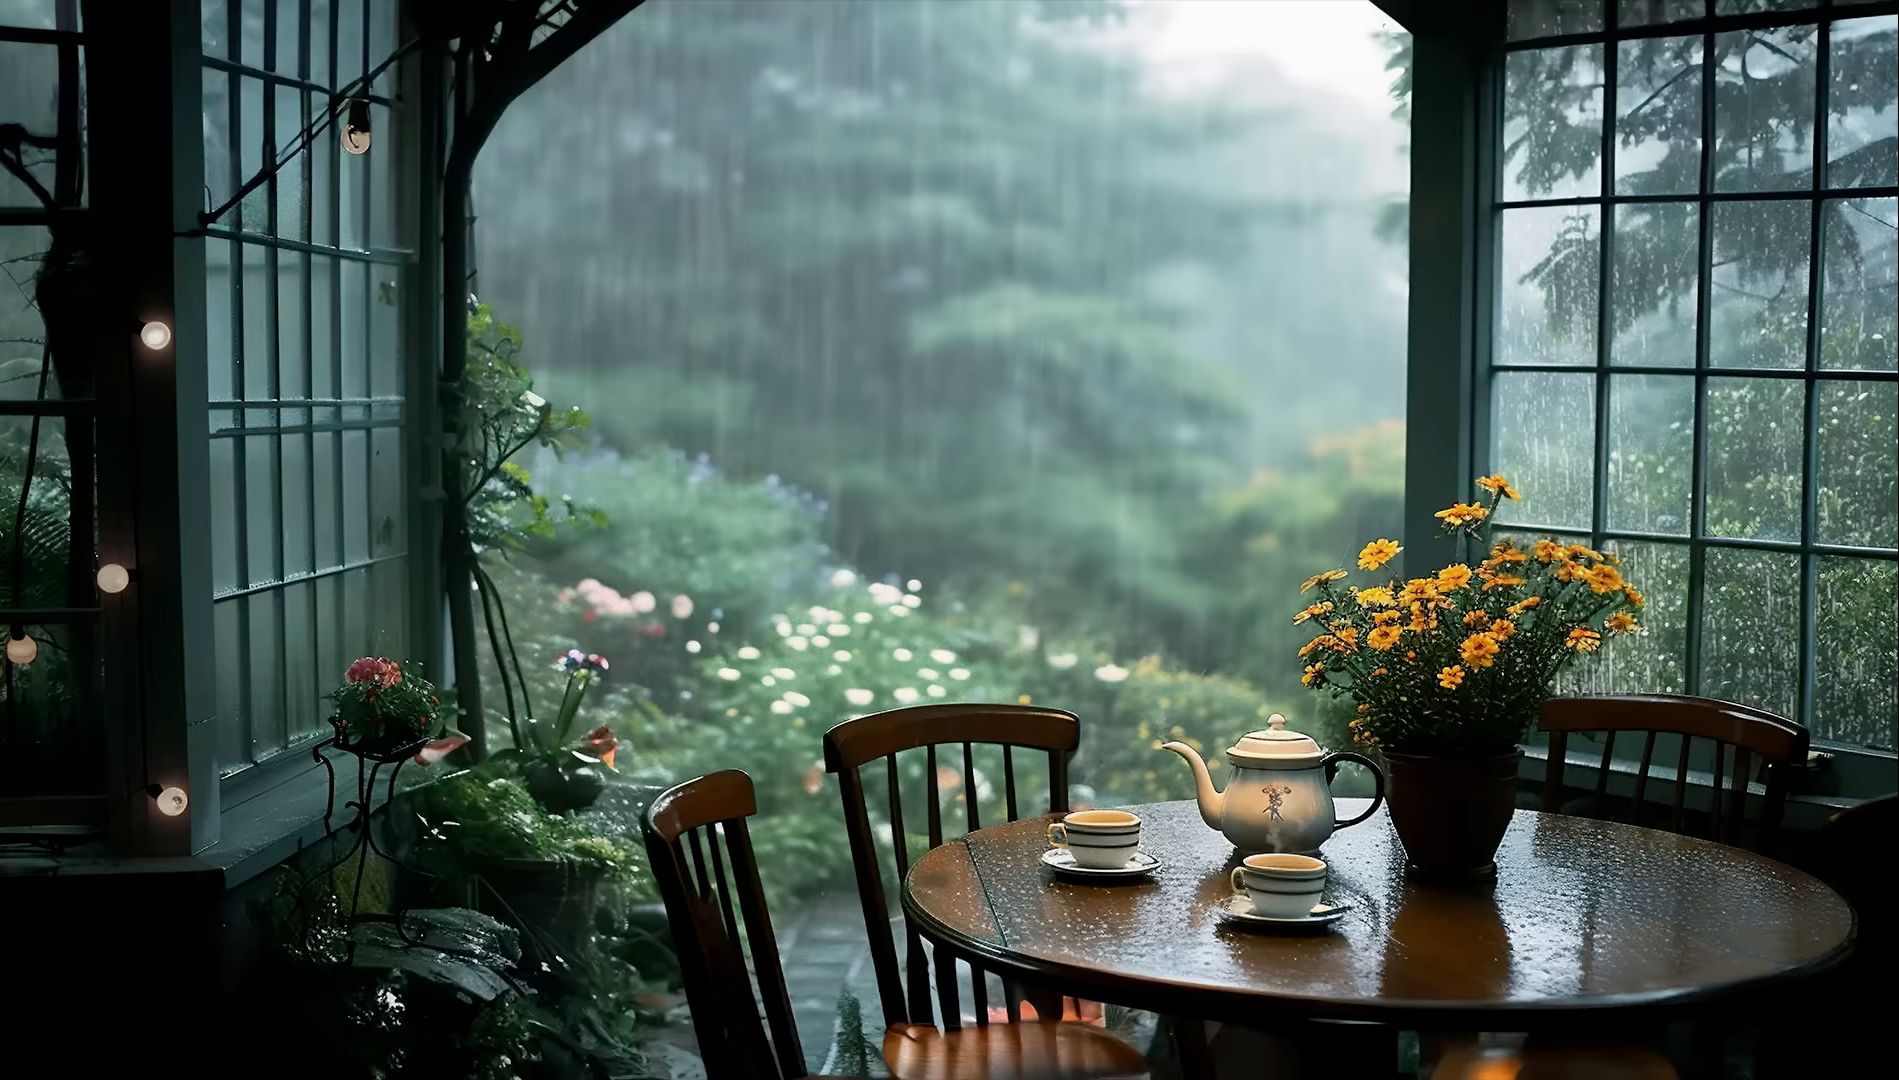 烂漫不过世间花，慢煮光阴一盏茶人生，看花听雨赏月喝茶。